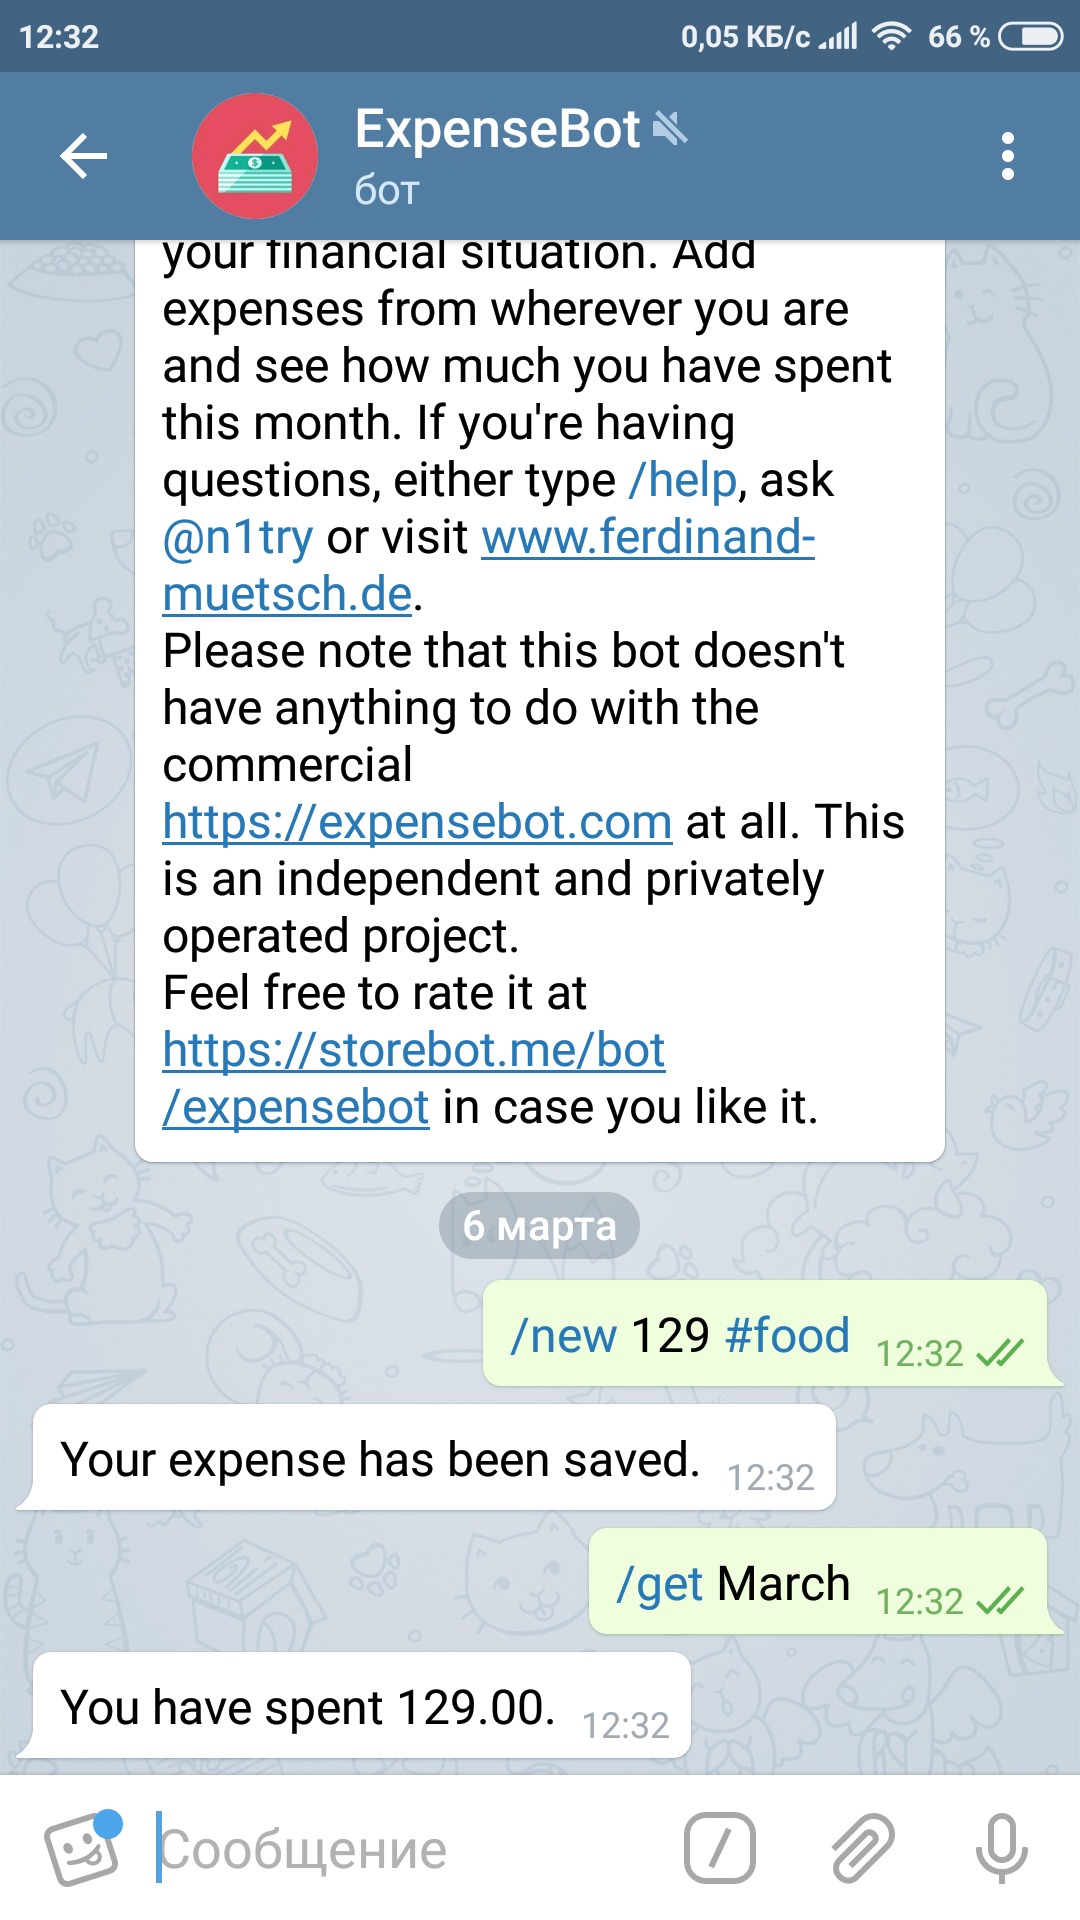 скриншот телеграм бот для финансов подробнее арт блог грош @groshblog